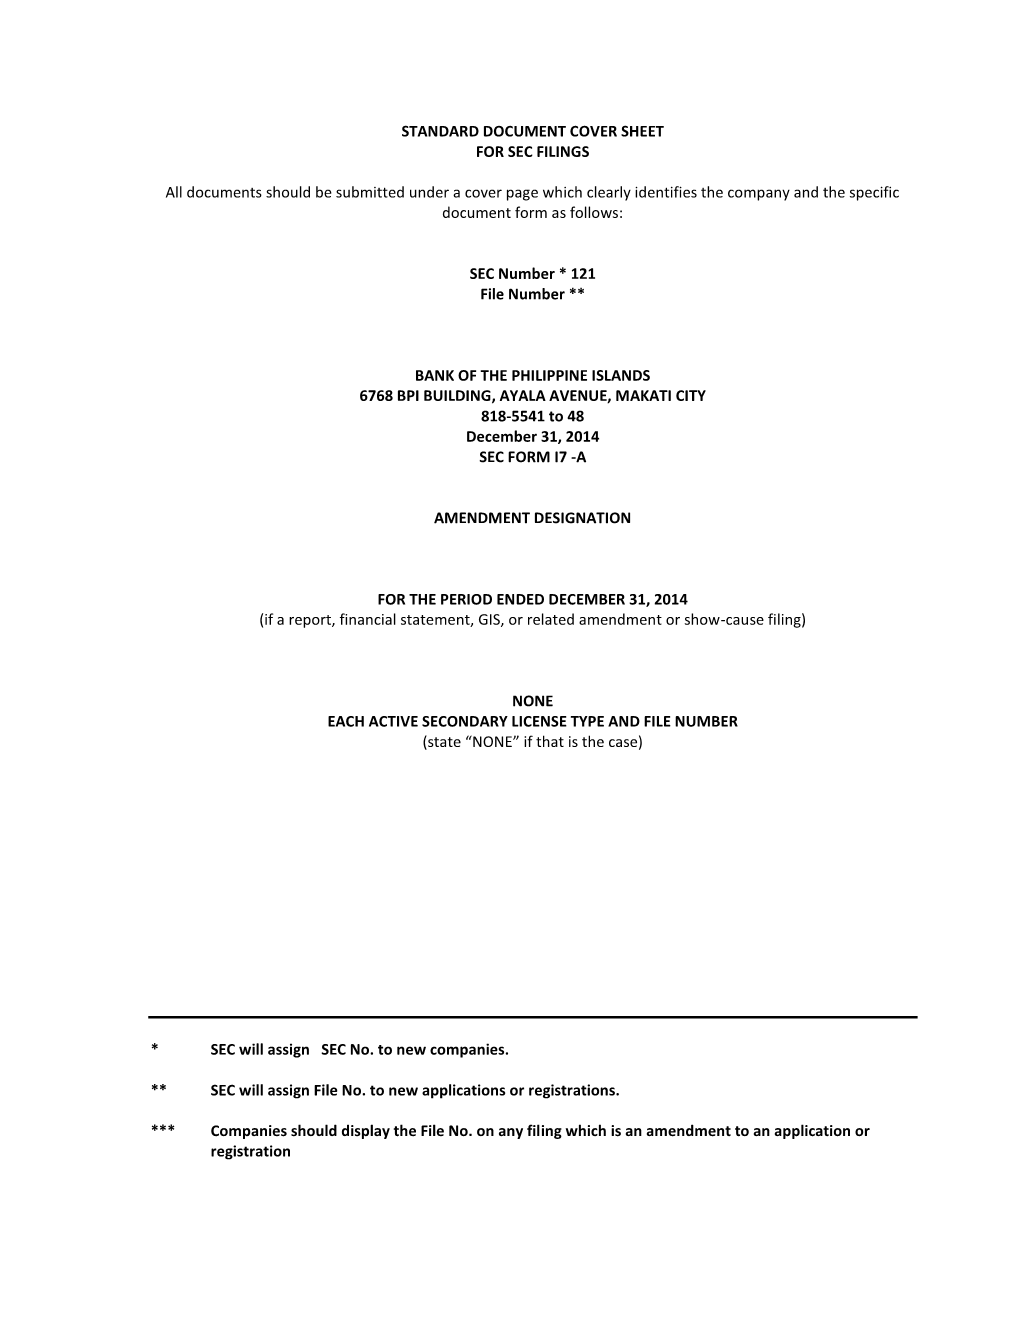 Standard Document Cover Sheet for Sec Filings